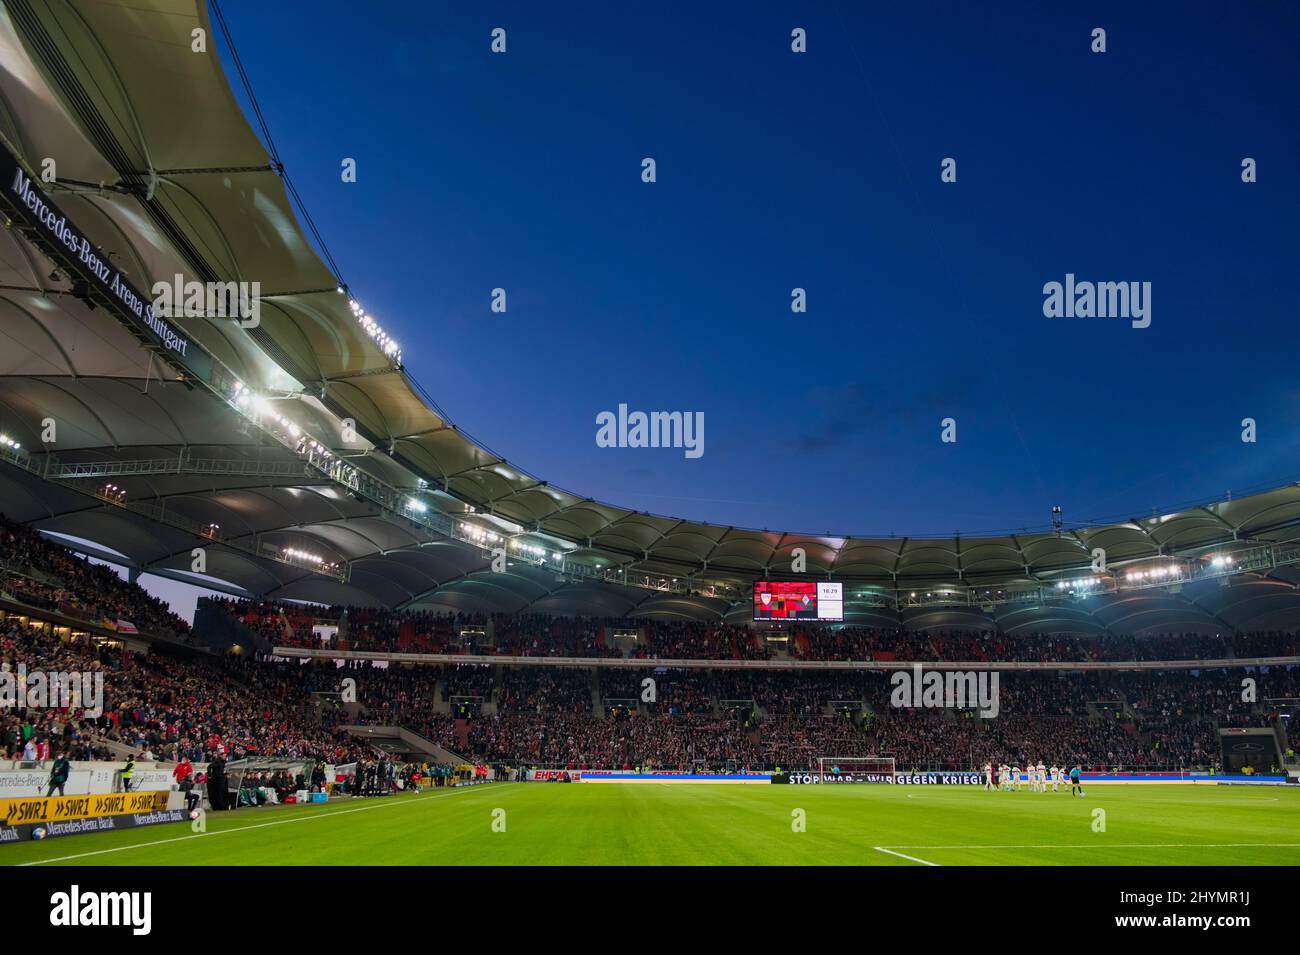 Présentation du stade, heure bleue, Mercedes-Benz Arena, Stuttgart, Bade-Wurtemberg, Allemagne Banque D'Images